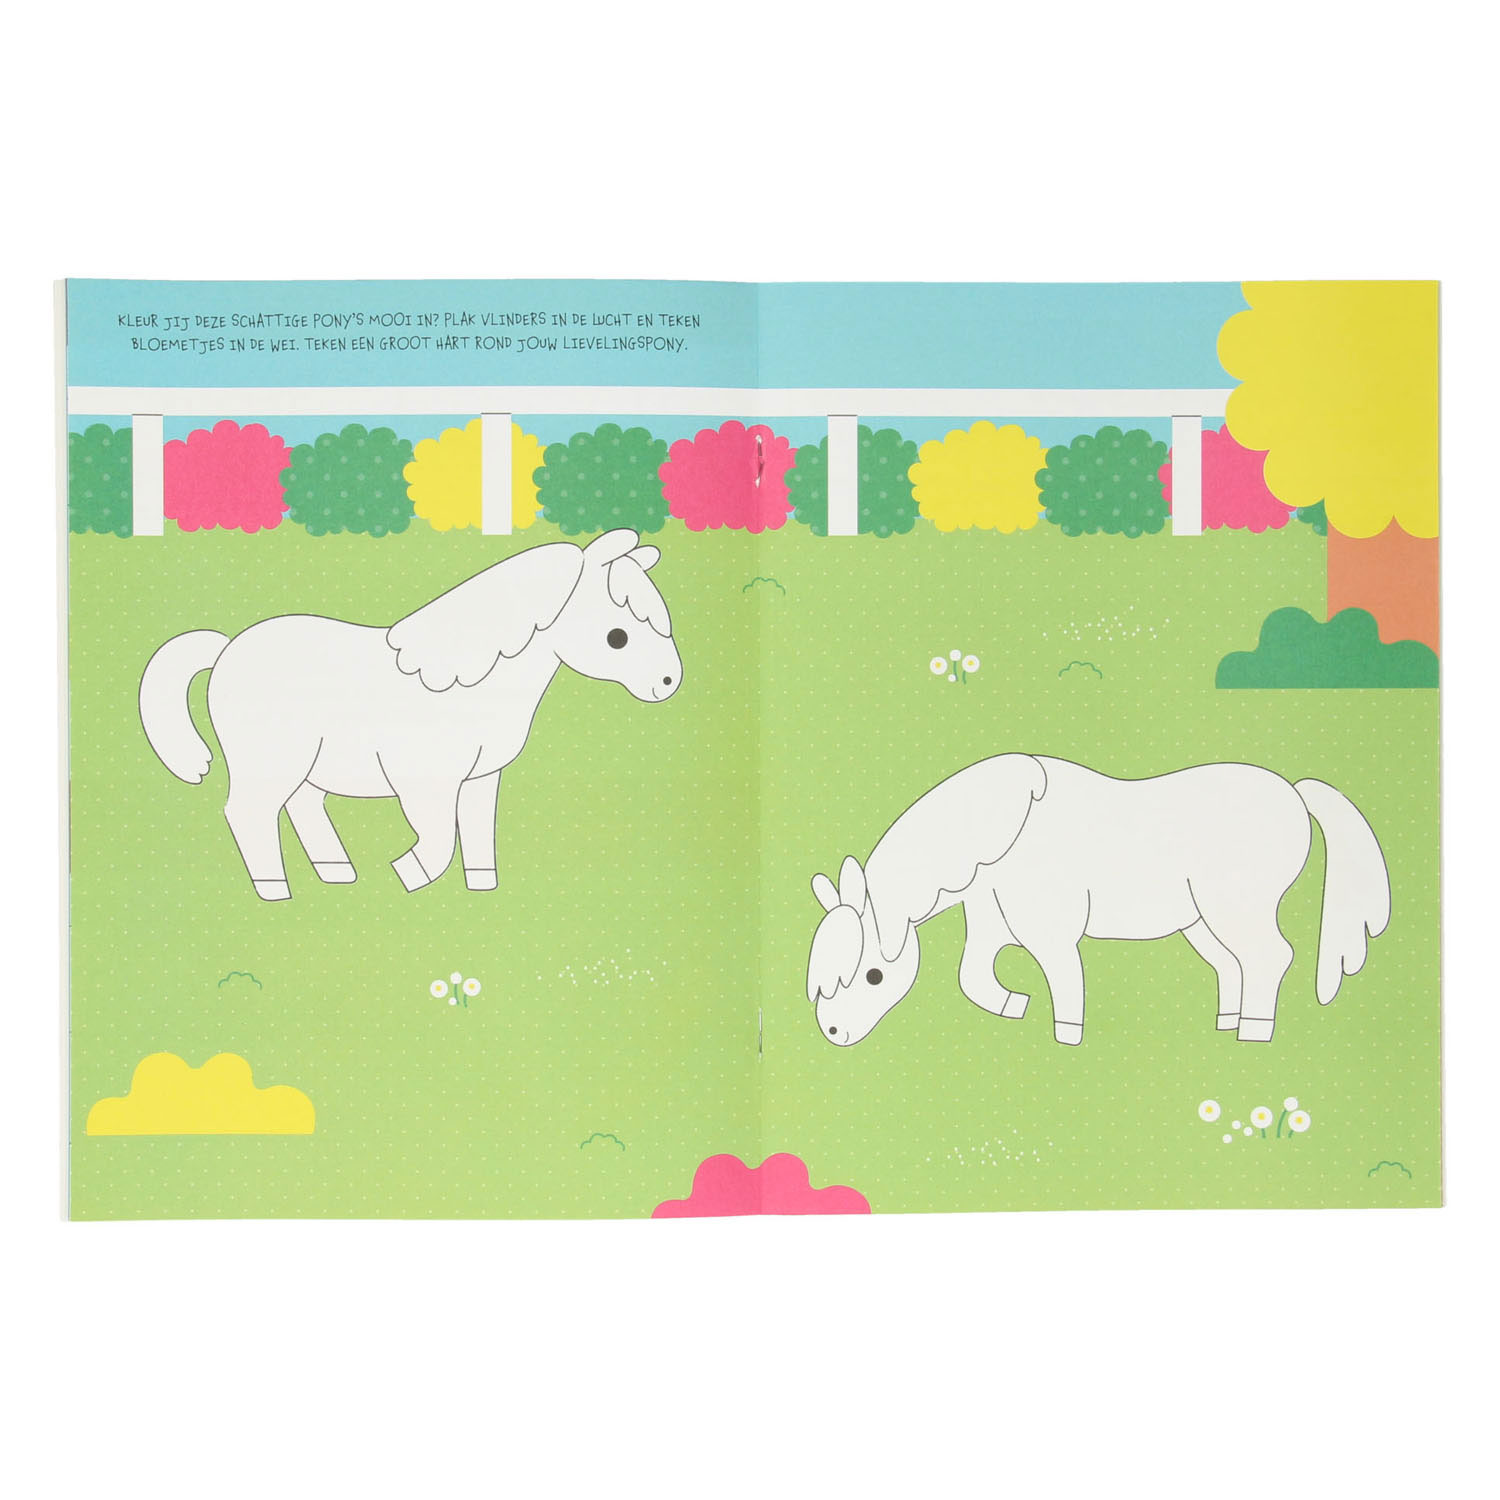 Mijn Sticker- en Activiteitenboek - Paarden en Pony's